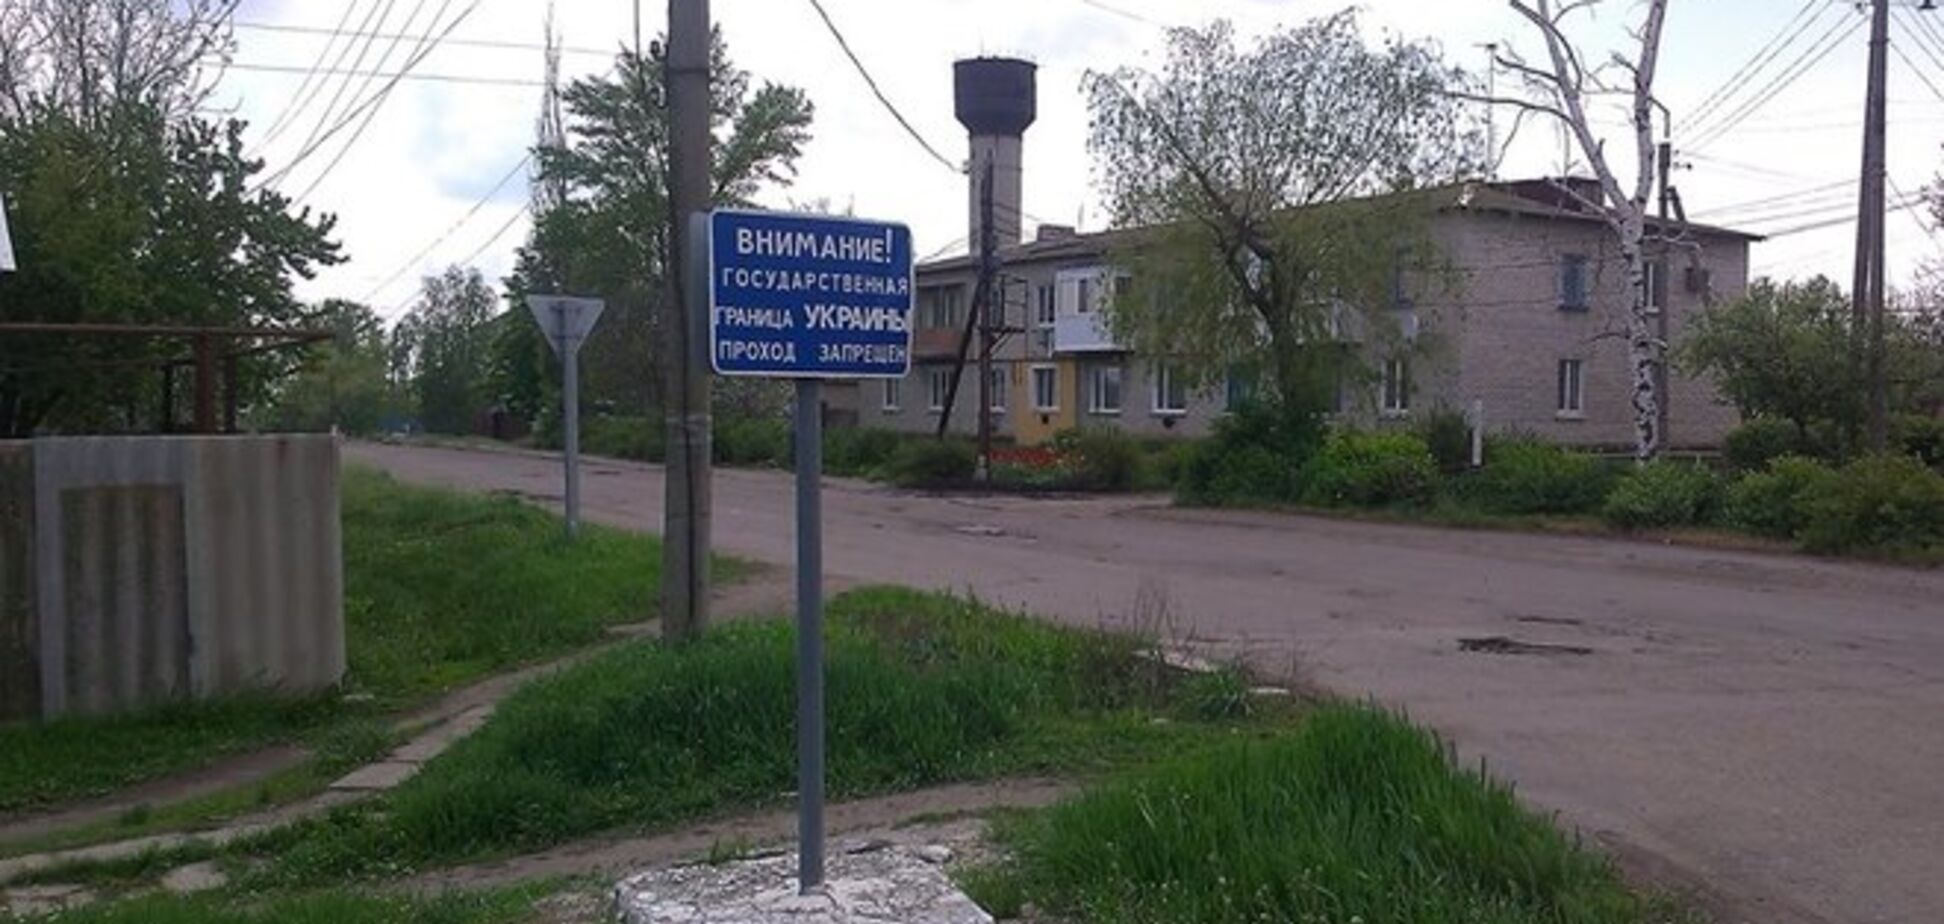 Граница Луганщины с Россией открыта для 'всех, кому не лень' - журналист